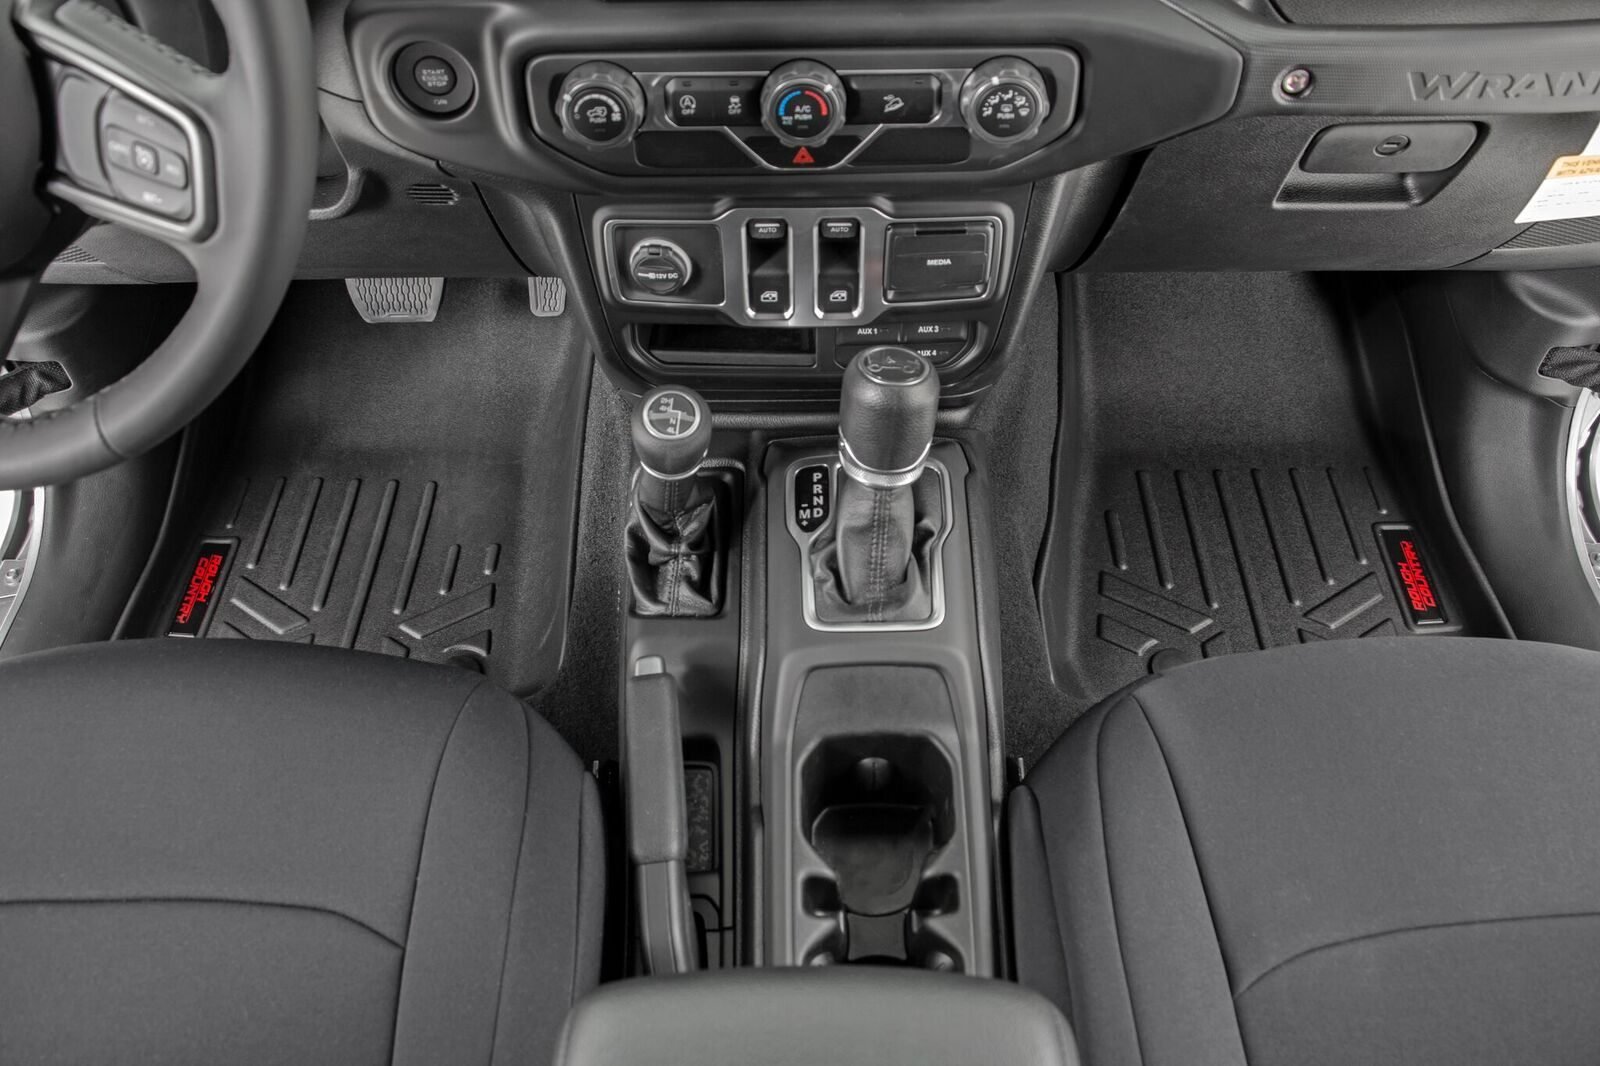 2020 Jeep Wrangler 2-Door All-Weather Car Mats - Flexible Rubber Floor Mats